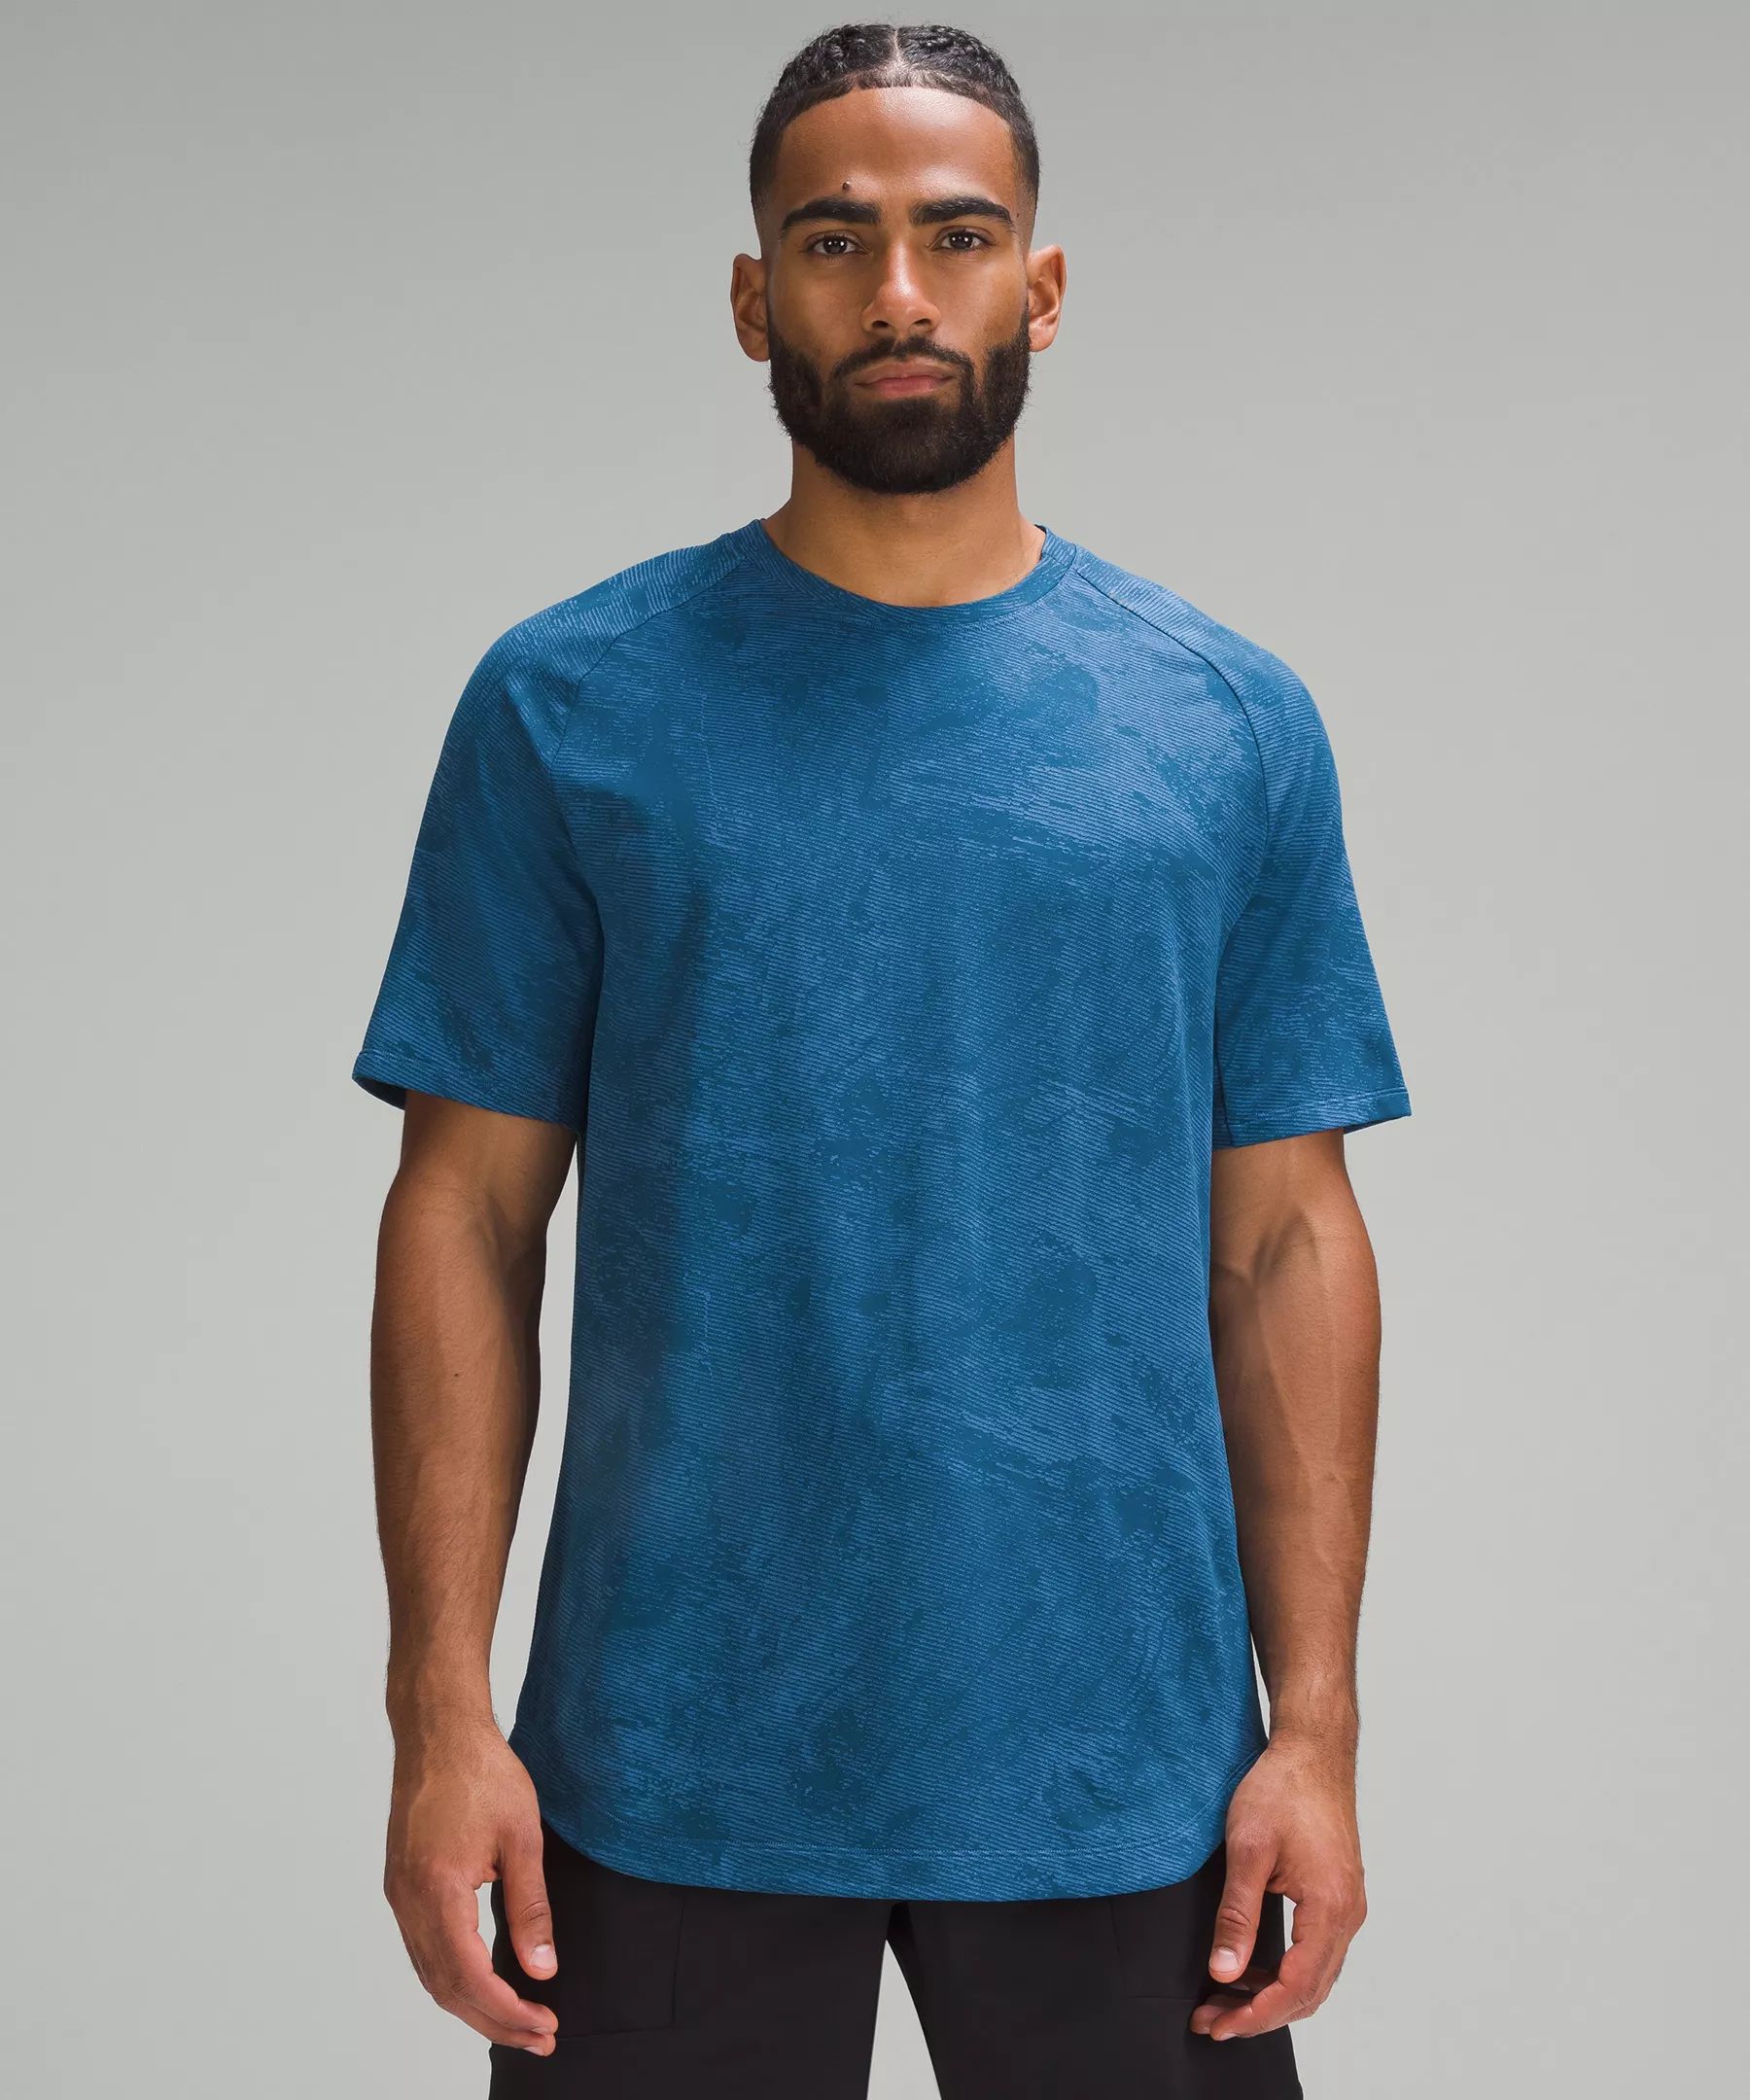 Drysense Short-Sleeve Shirt | Lululemon (US)